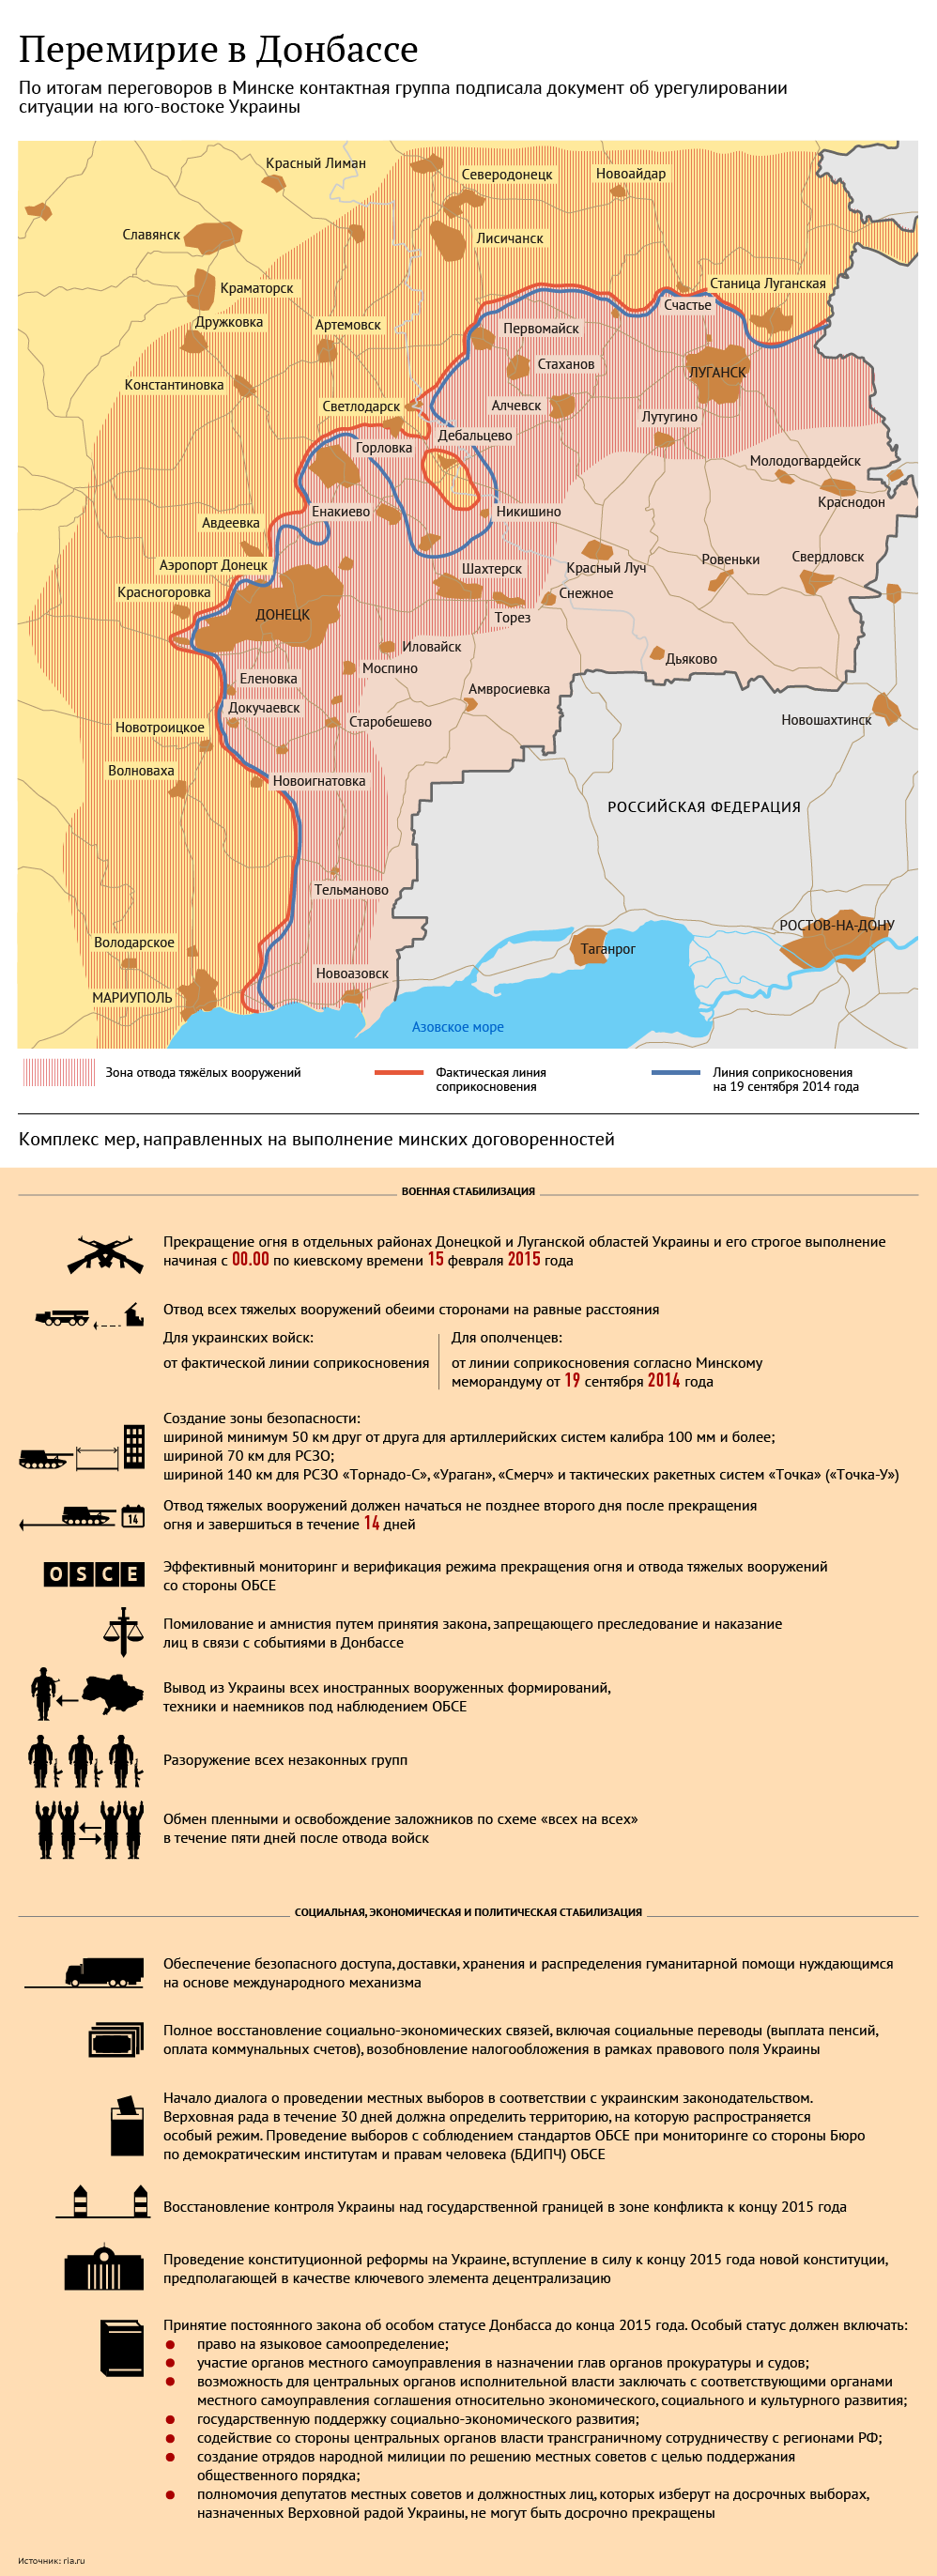 Перемирие в Донбассе